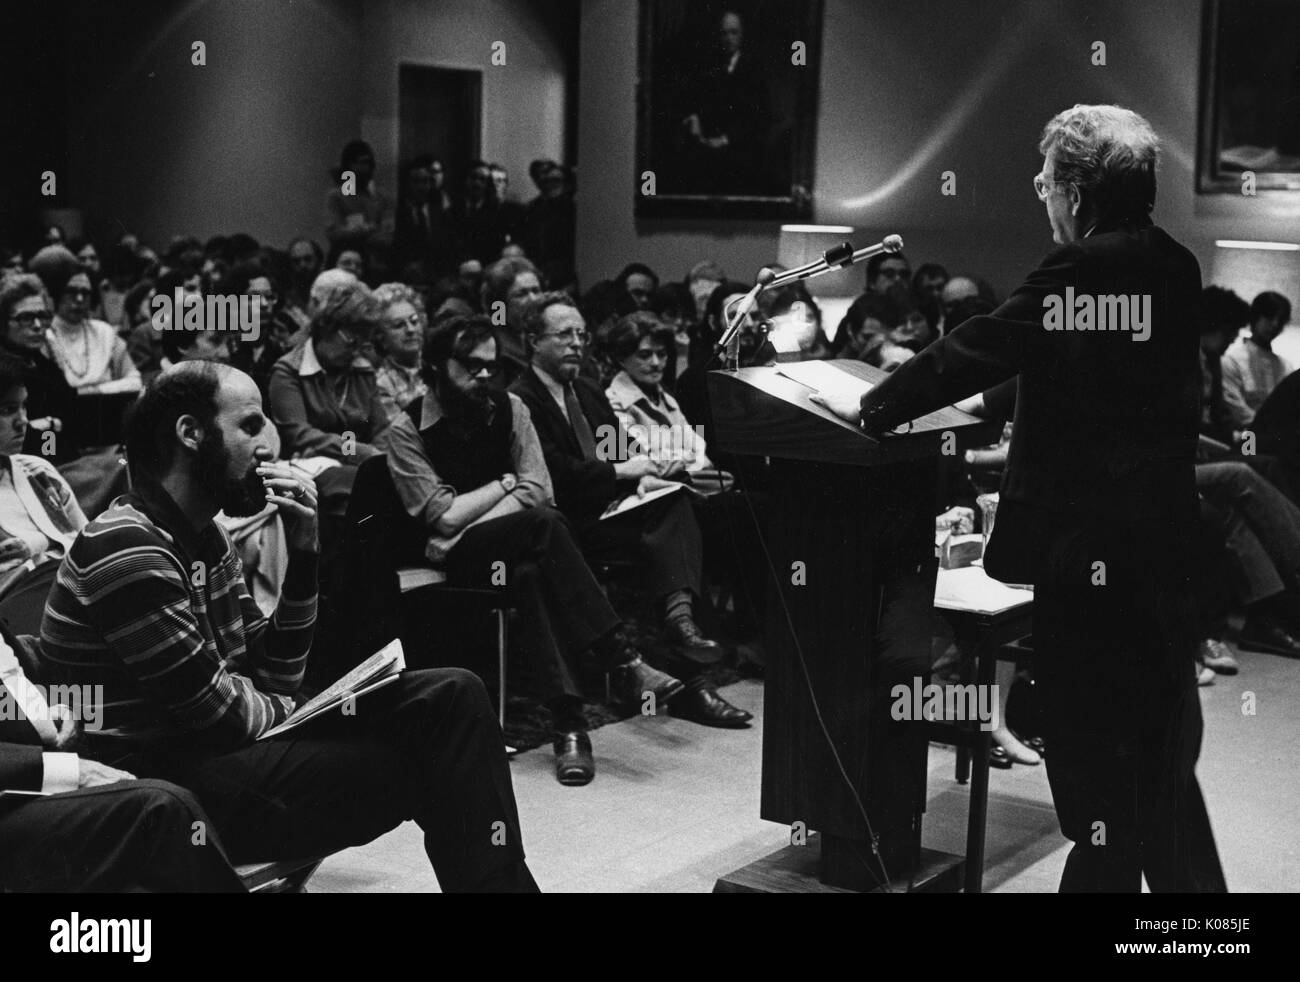 Auteur Northrup Frye donnant un discours, portant un costume sombre et des lunettes, debout derrière un podium en bois, les deux mains appuyé sur le podium, l'auditoire avec toutes les expressions du visage grave, 1972. Banque D'Images